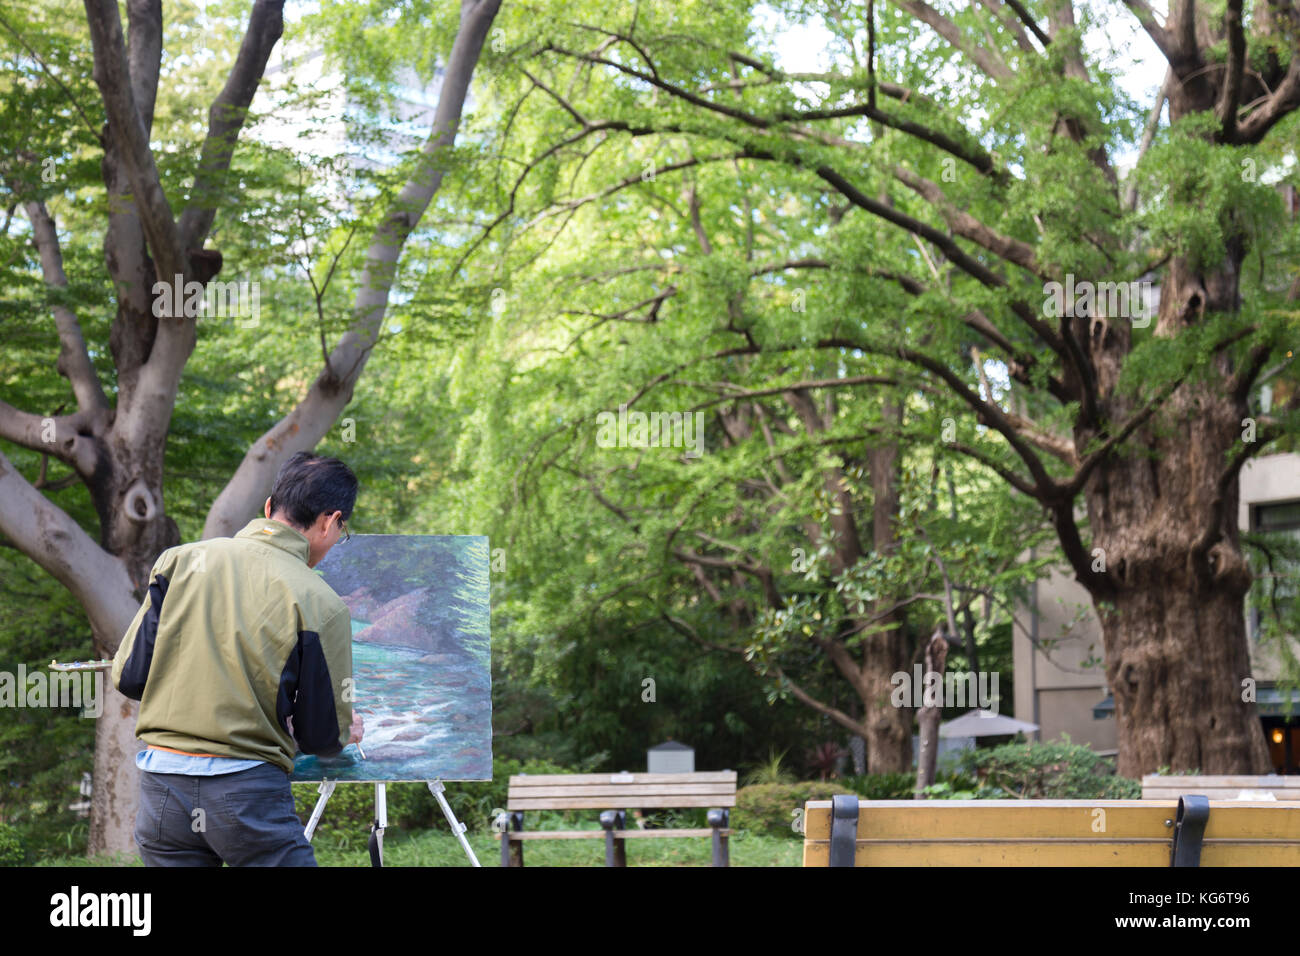 Le parc Ueno, Tokyo, Japon - decamber 11, 2016 : l'homme japonais asiatique peinture artiste stream photo dans le parc d'Ueno. Banque D'Images